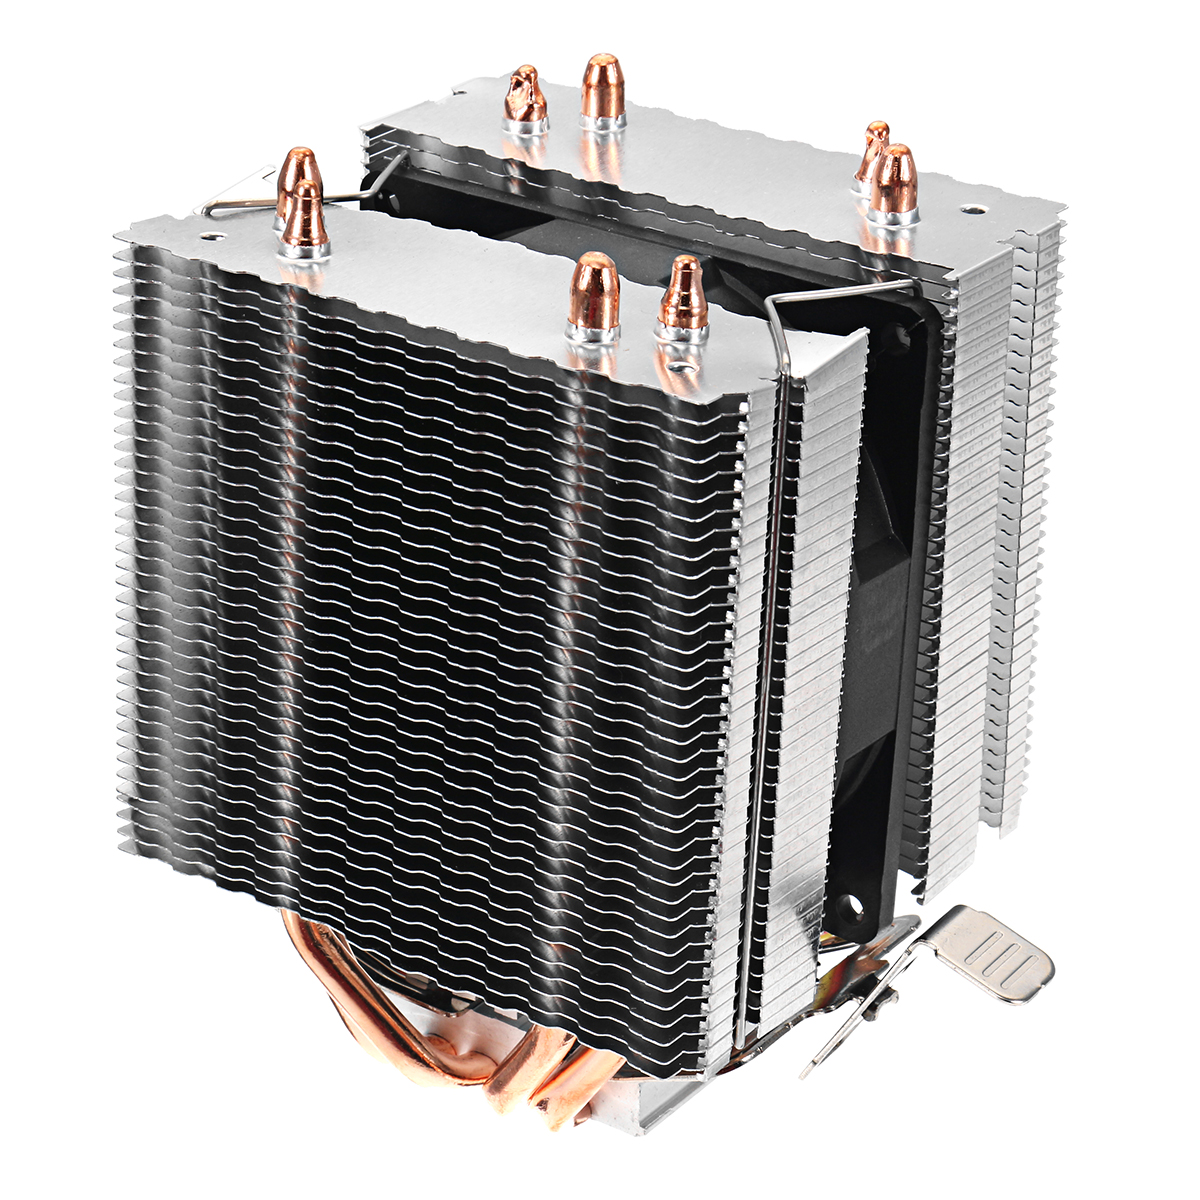 

DC 12V 3Pin 2200RPM Охлаждающий радиатор охлаждения охлаждающего вентилятора для Intel AMD